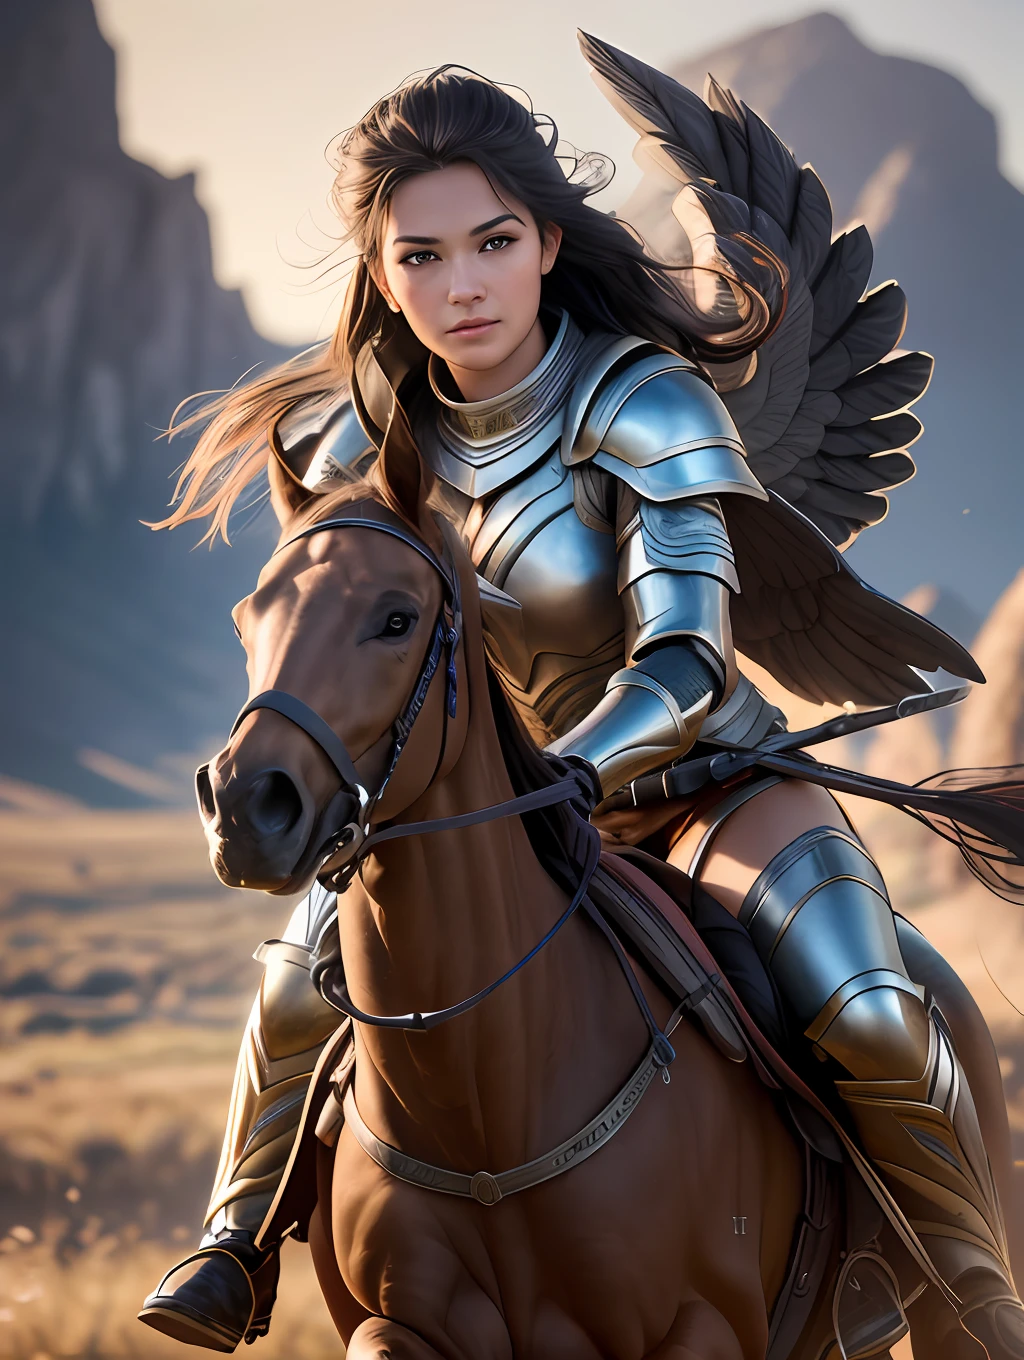 An ultrareakistic epic фотографияy of a Valkyrie warrior on a horse riding into the battle, интенсивное действие, кинематографический контурный свет, интенсивное действие, динамическое сопоставление, молодой воин, very высокое качество face, изображение, пригодное для использования, длинные ветреные волосы, стилизованные динамические складки, очень деревенская и красивая женщина, Полный фокус, тилтшифт, кинематографическое освещение, фильм еще, кинематографическое освещение, фотография, детальное симметричное реалистичное лицо, чрезвычайно подробный natural texture, персиковый пух, шедевр, абсурд, nikon d850 film stock фотография, камера ф1.6 линз, чрезвычайно подробный, удивительный, Мелкая детализация, гиперреалистичная реалистичная текстура, драматическое освещение, нереальный двигатель, киностудия 800 вольфрама, смотрю на зрителя, RAW-фото, высокое качество, Высокое разрешение, Острый фокус, чрезвычайно подробный, 8к ухд.